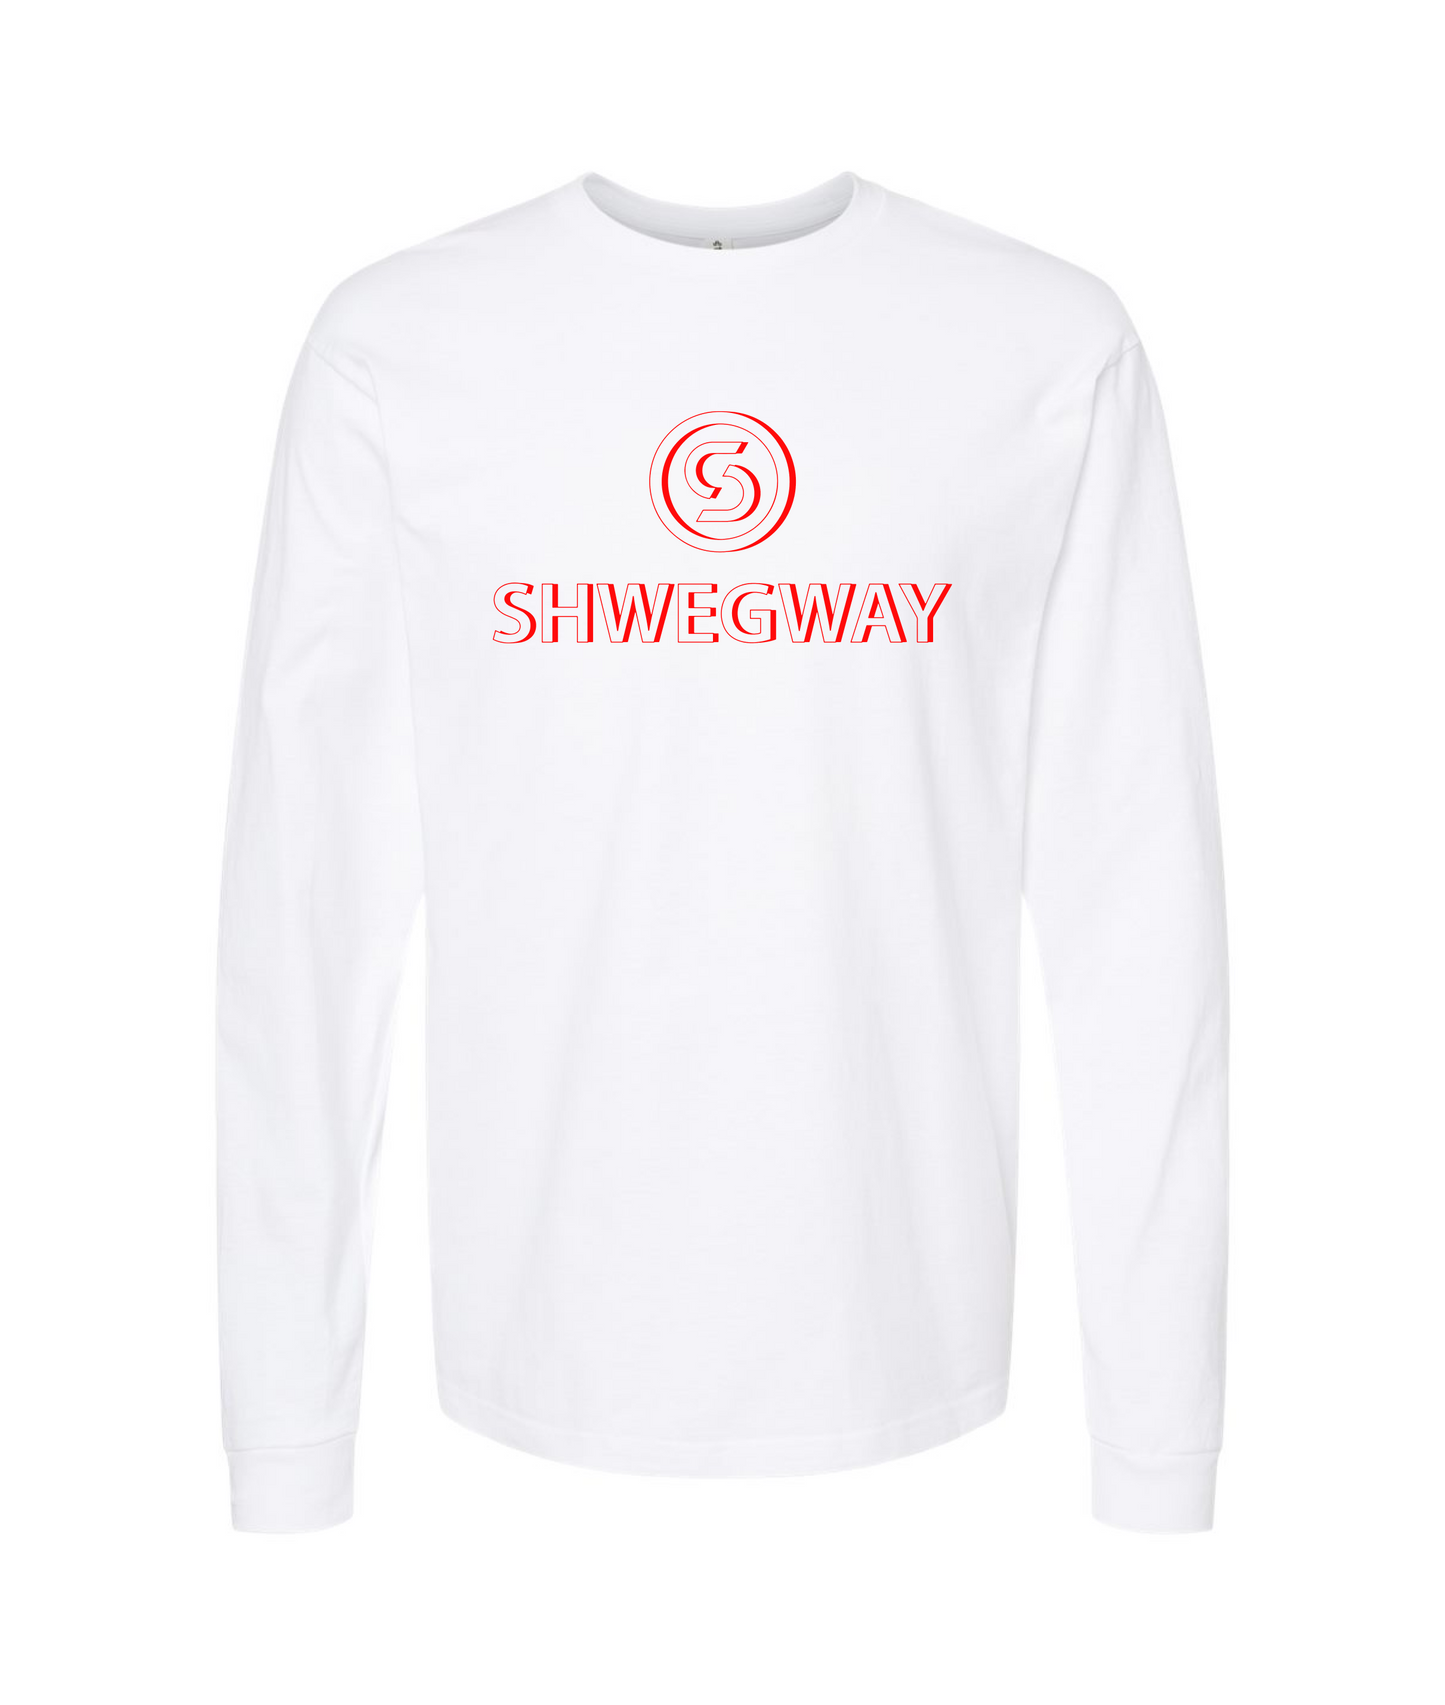 Shwegway Inc. - Logo - White Long Sleeve T